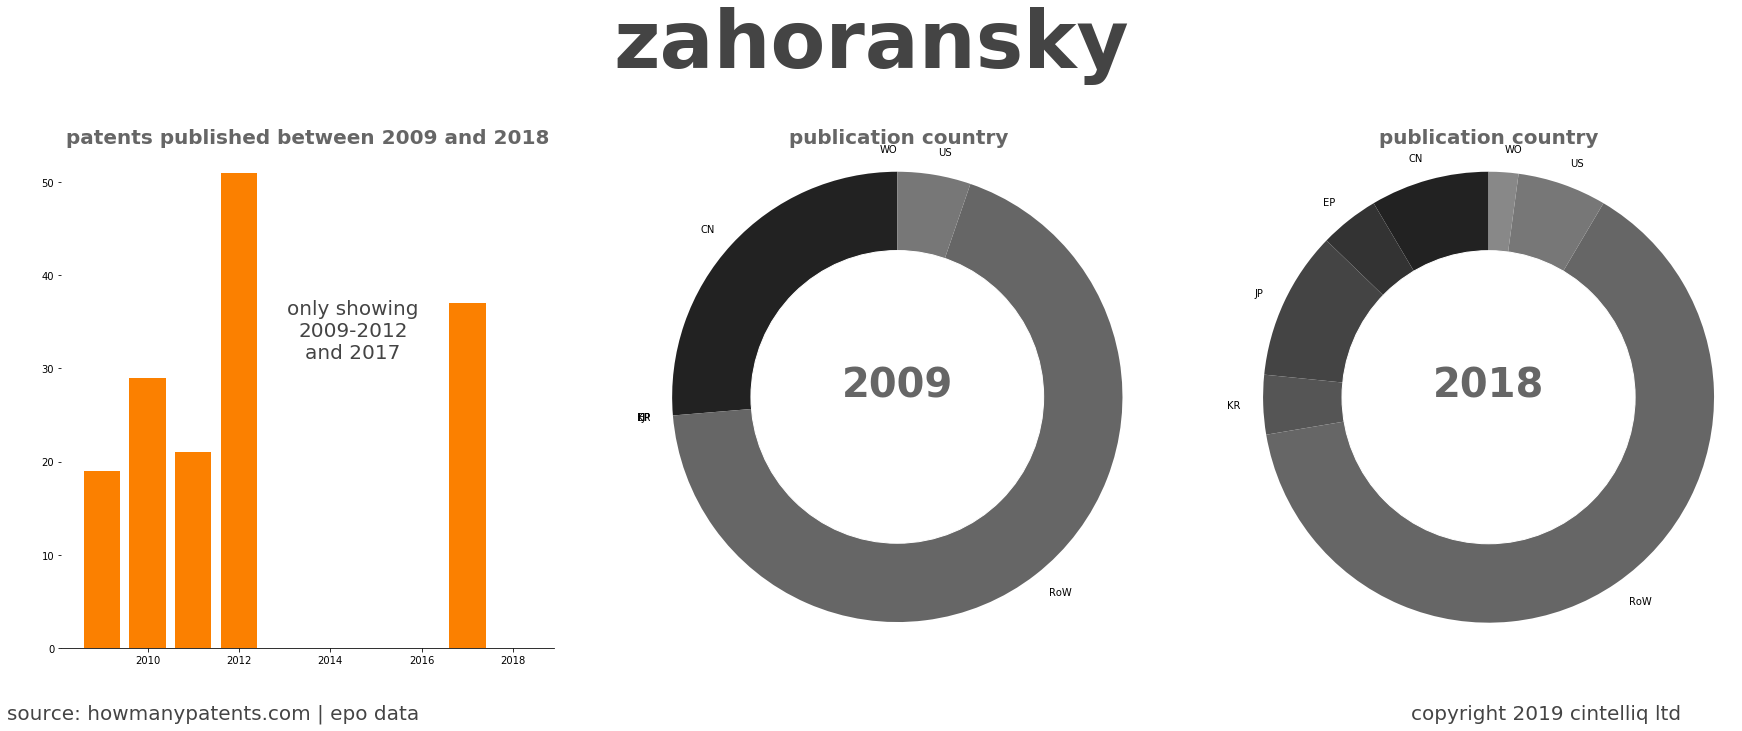 summary of patents for Zahoransky